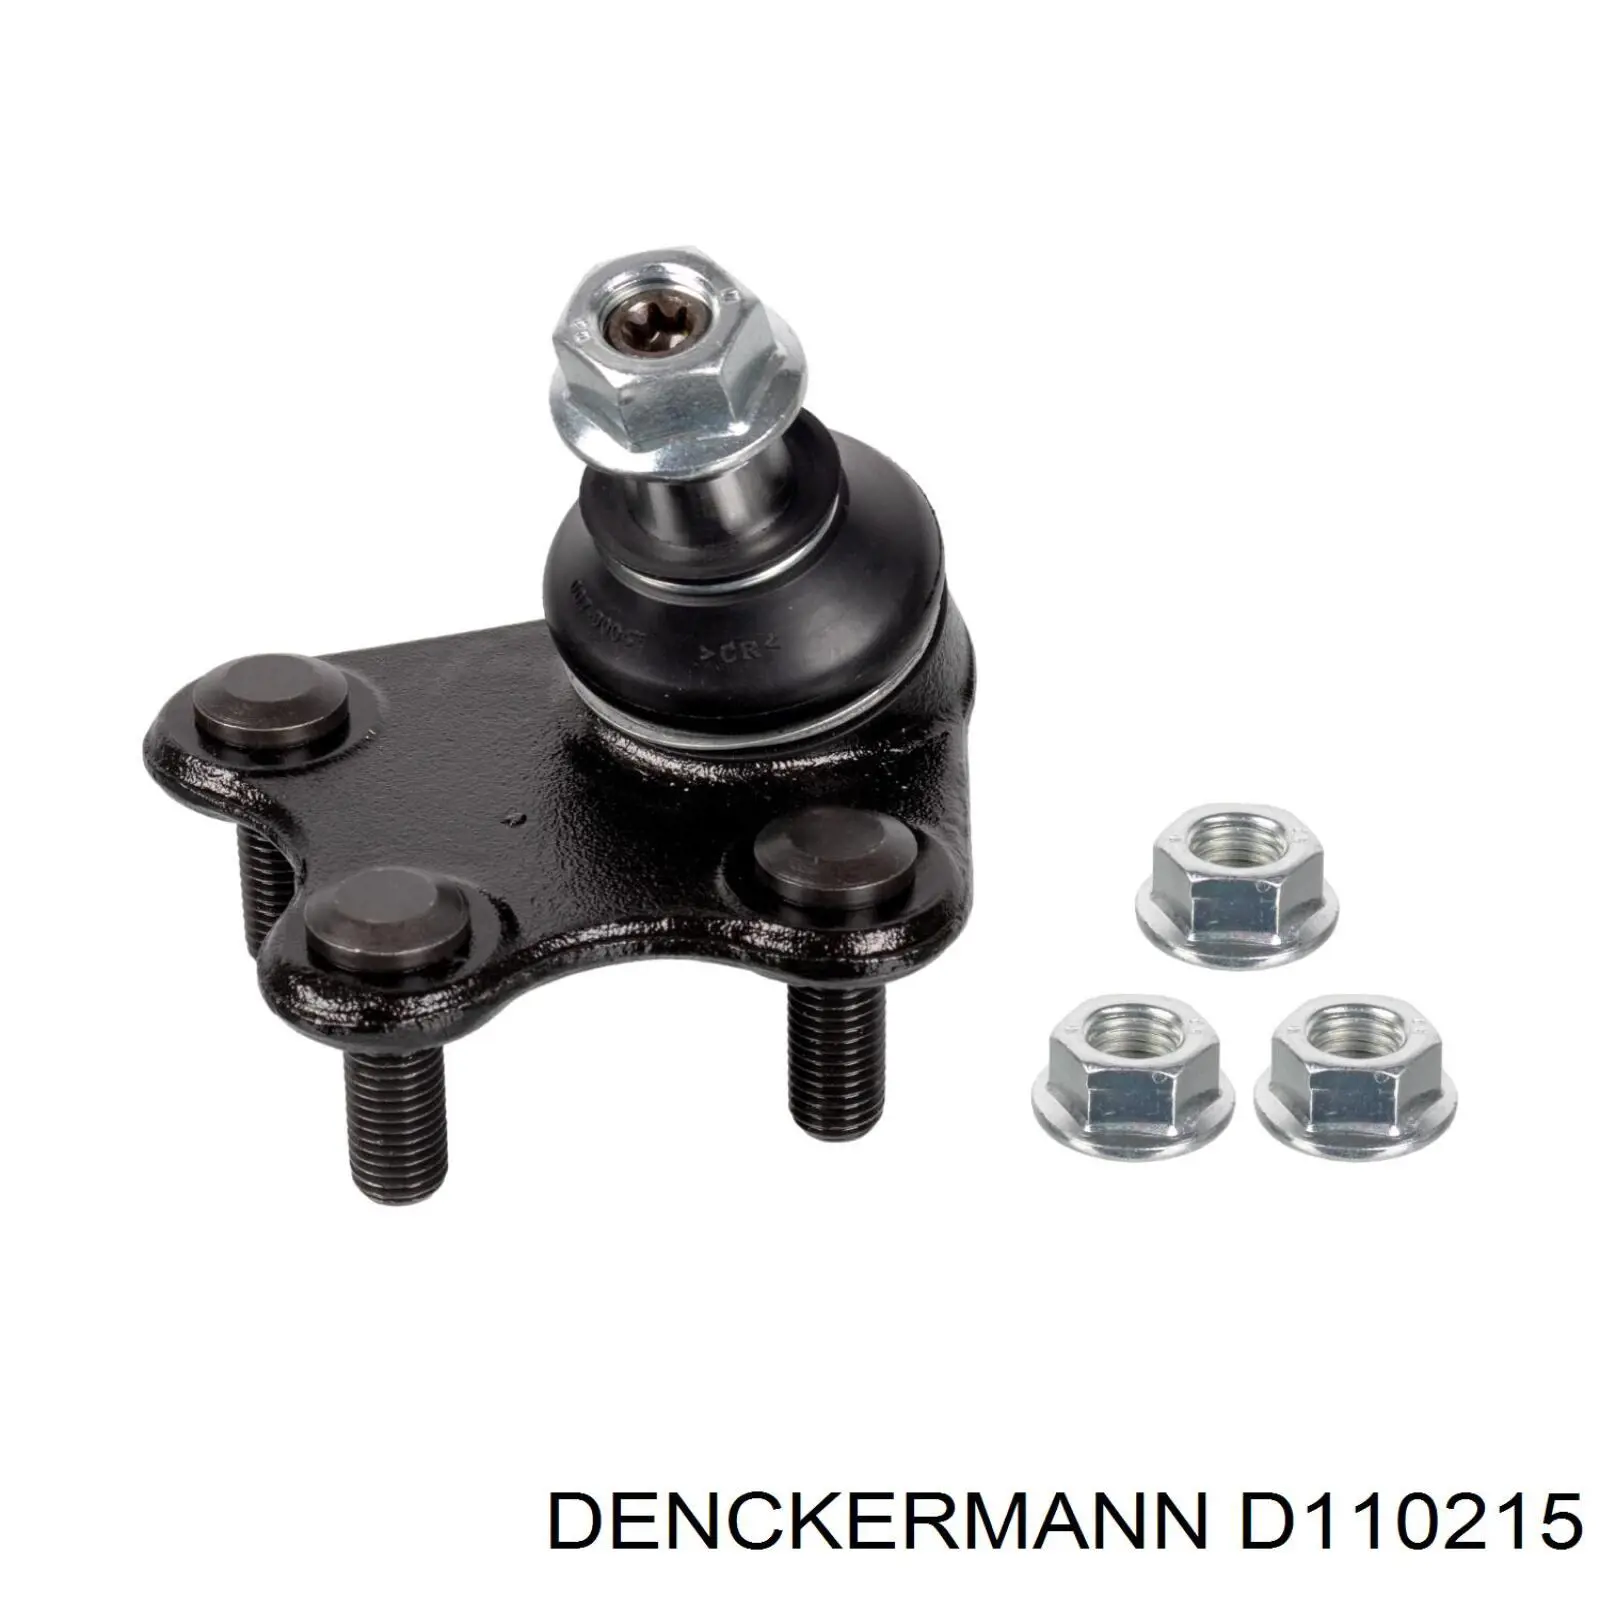 D110215 Denckermann rótula de suspensión inferior izquierda